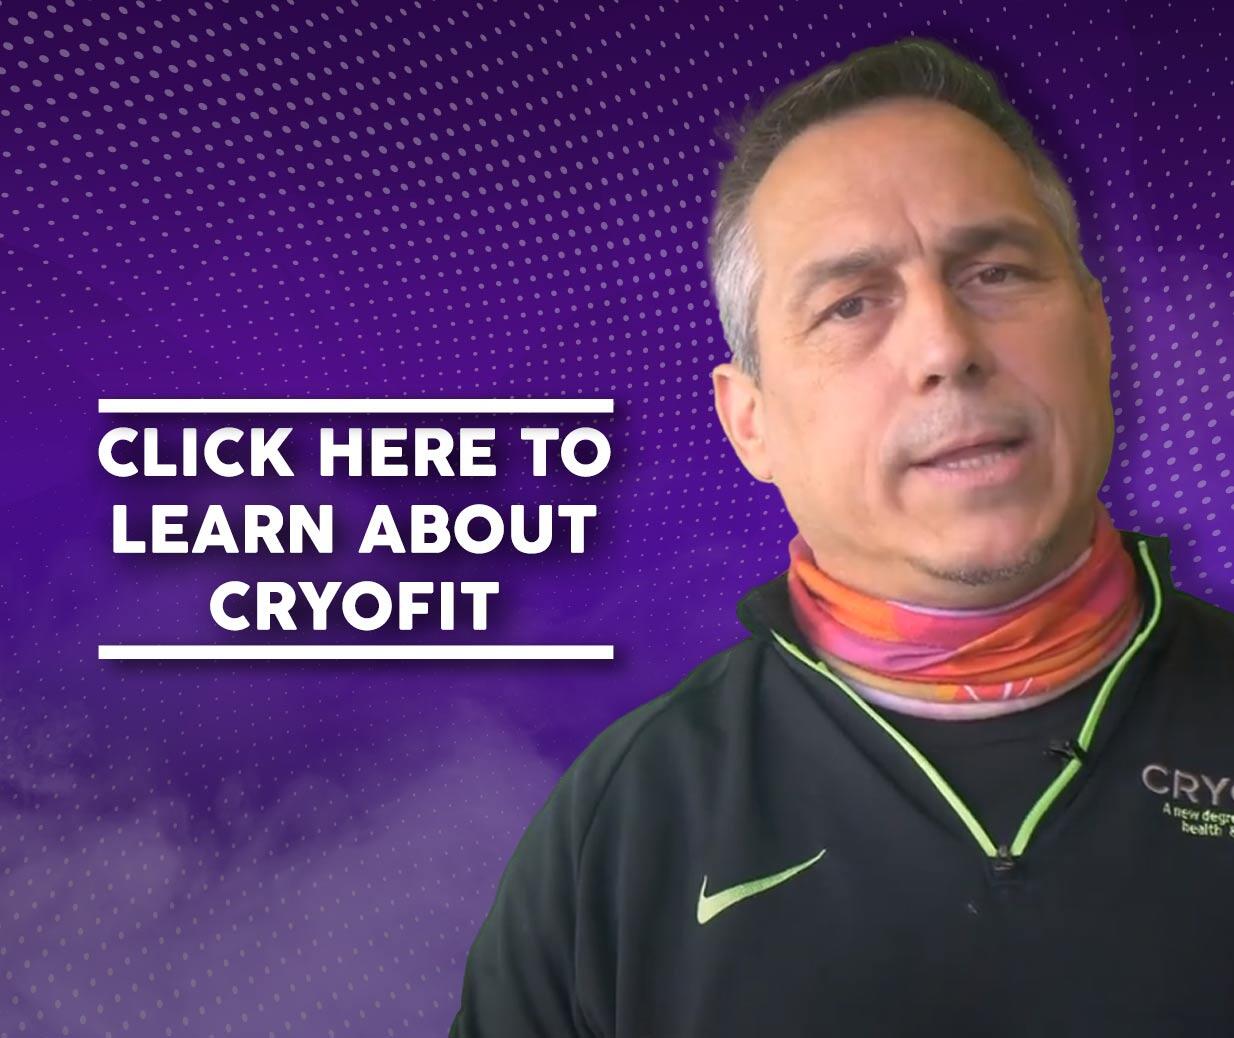 About CryoFit | CryoFit